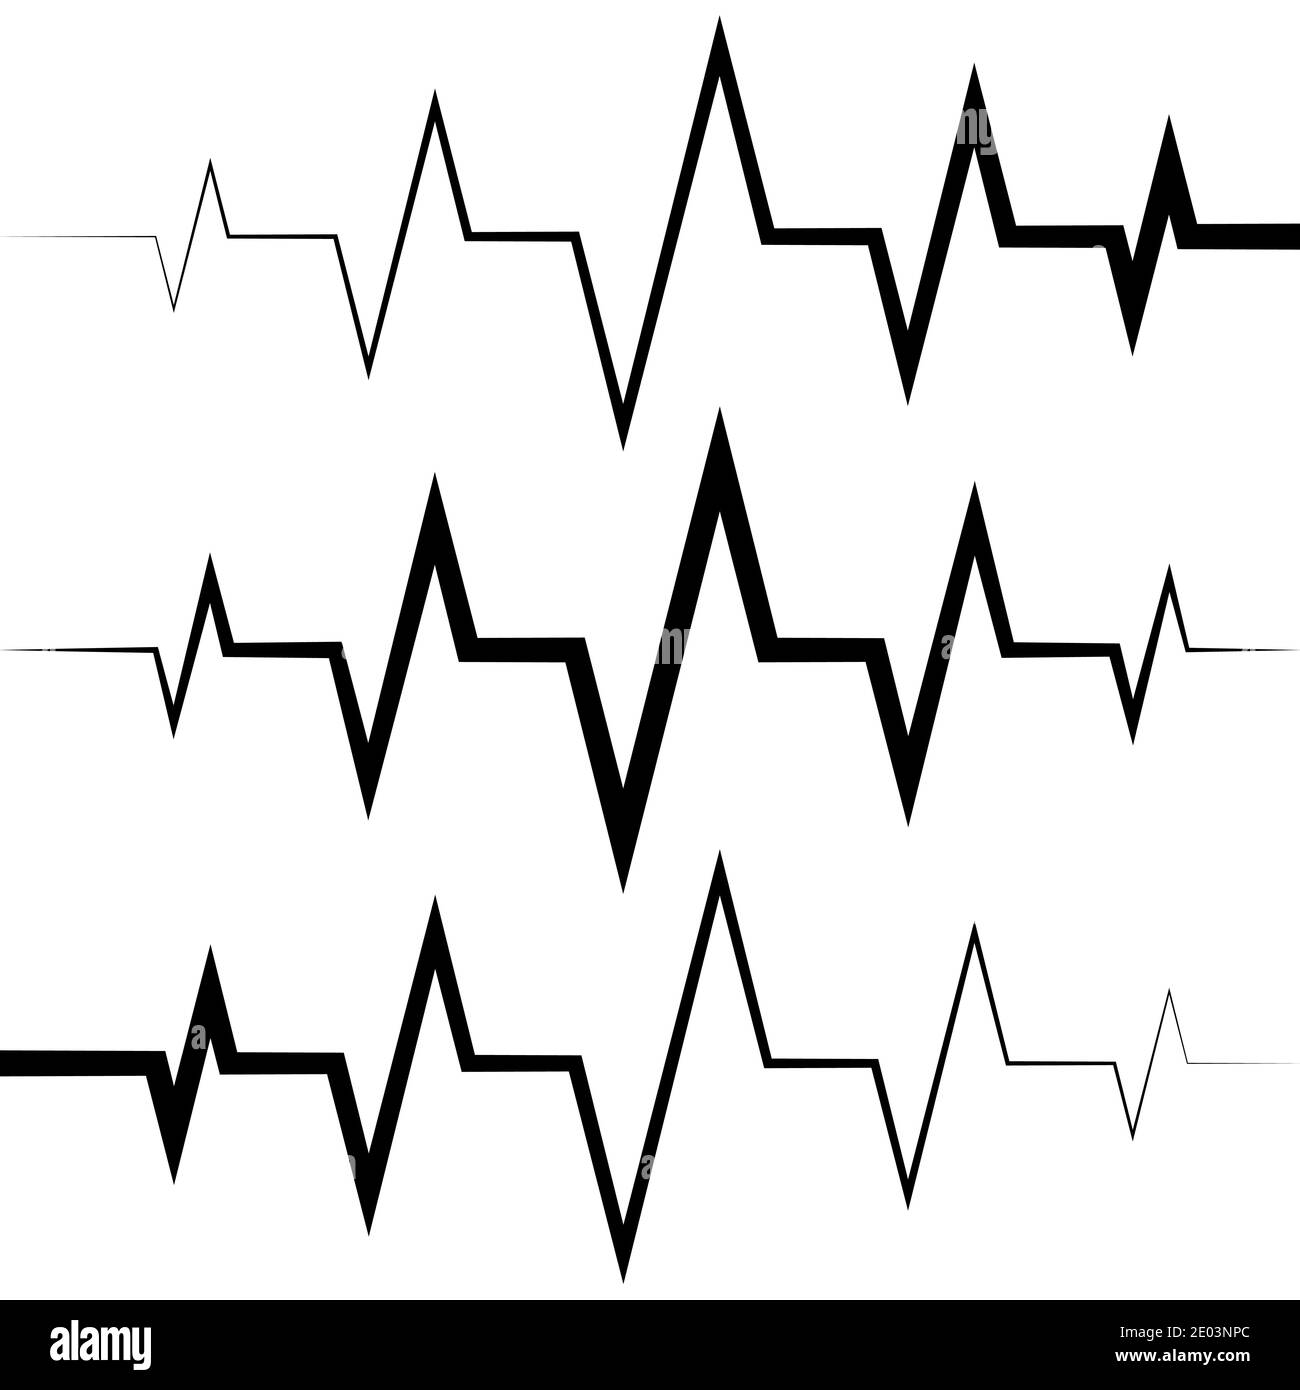 icône d'onde sinusoïdale icône de fréquence cardiaque icône de médicament logo, icône de fréquence cardiaque vectorielle icône de fréquence cardiaque, sons radio ondes d'amplitude pics Illustration de Vecteur